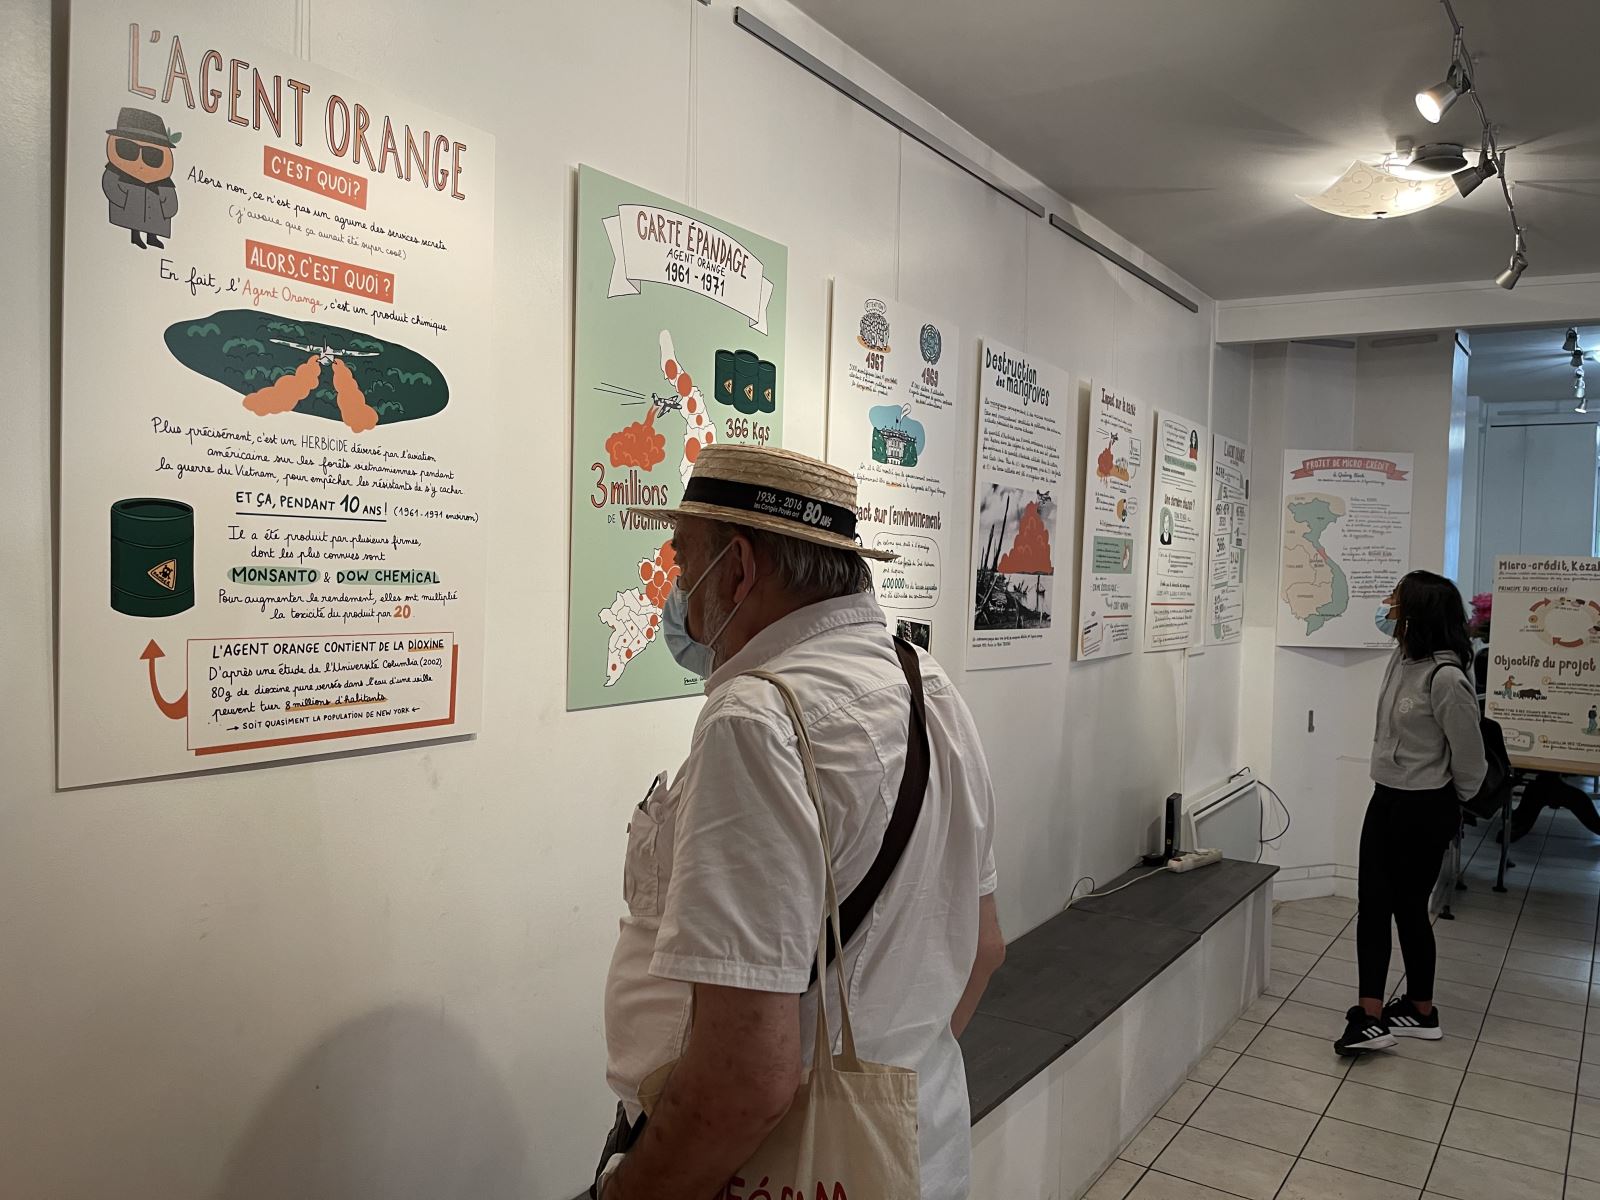 Tranh đồ họa về chất độc da cam Việt Nam lần đầu được triển lãm tại Pháp - Ảnh 2.